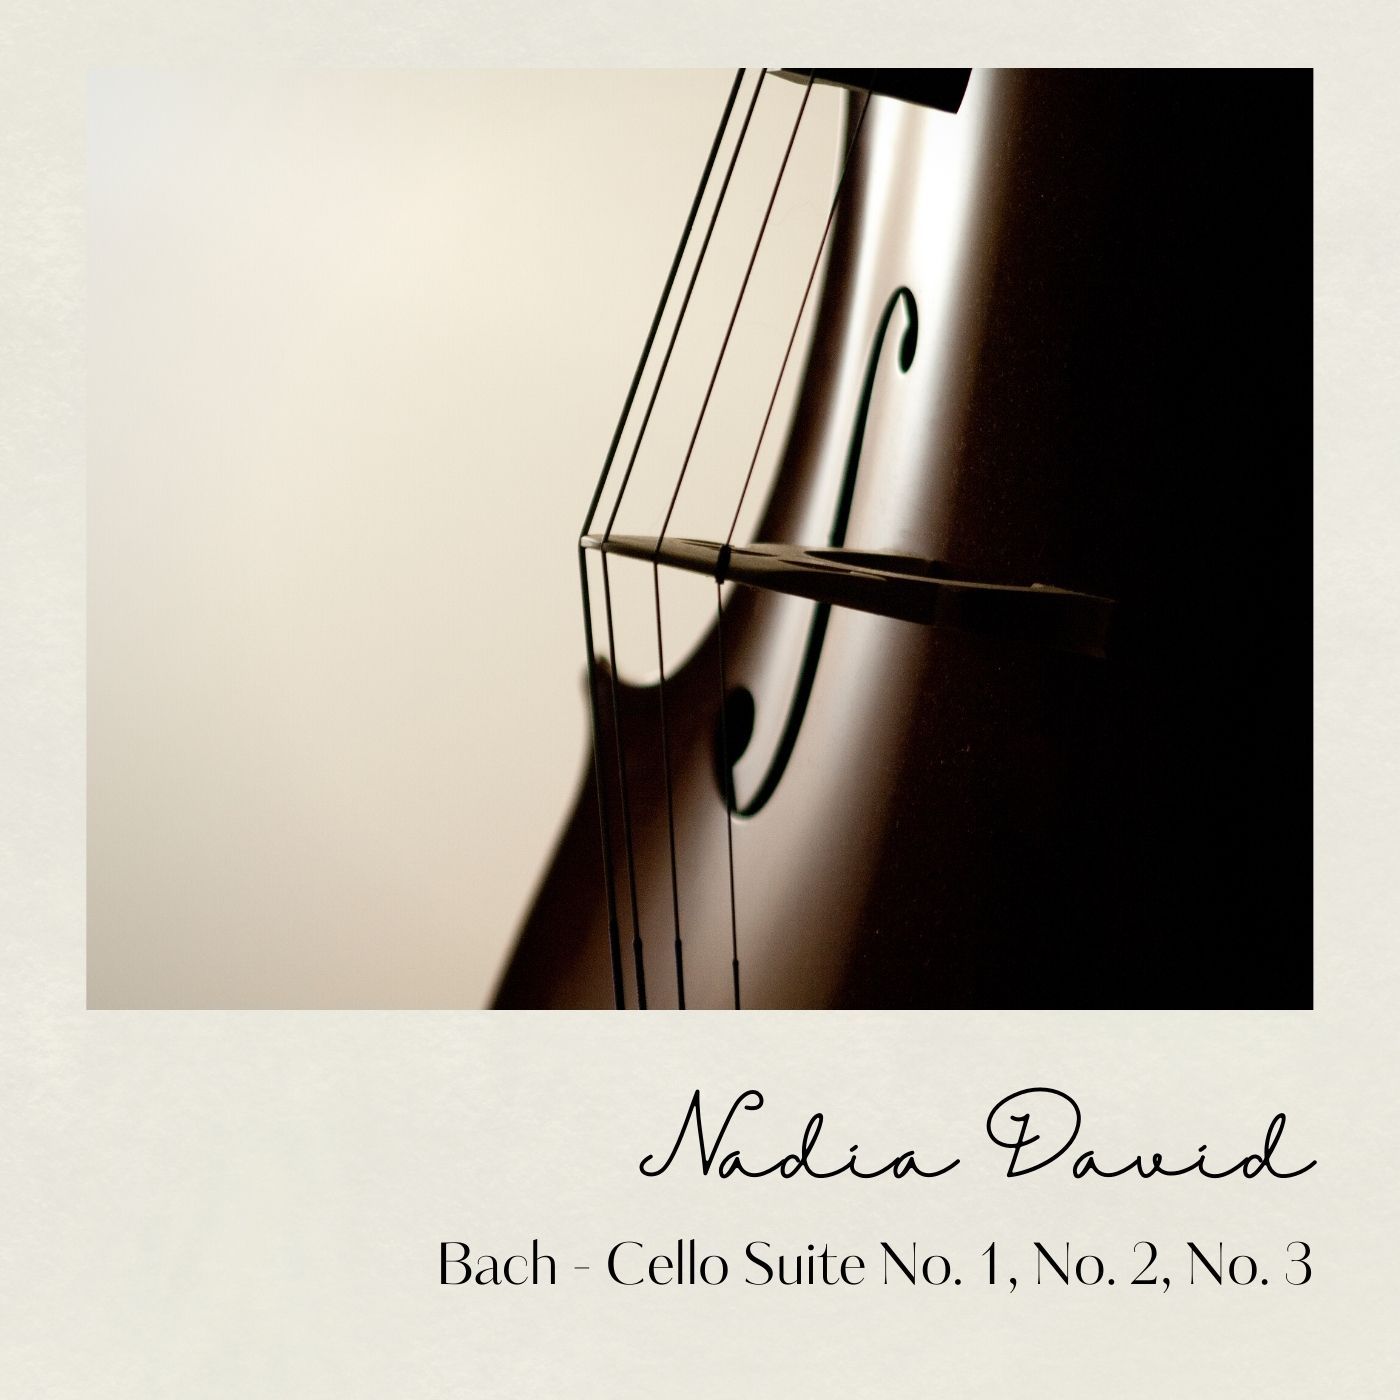 Bach: Cello Suite No. 1, 2, & 3